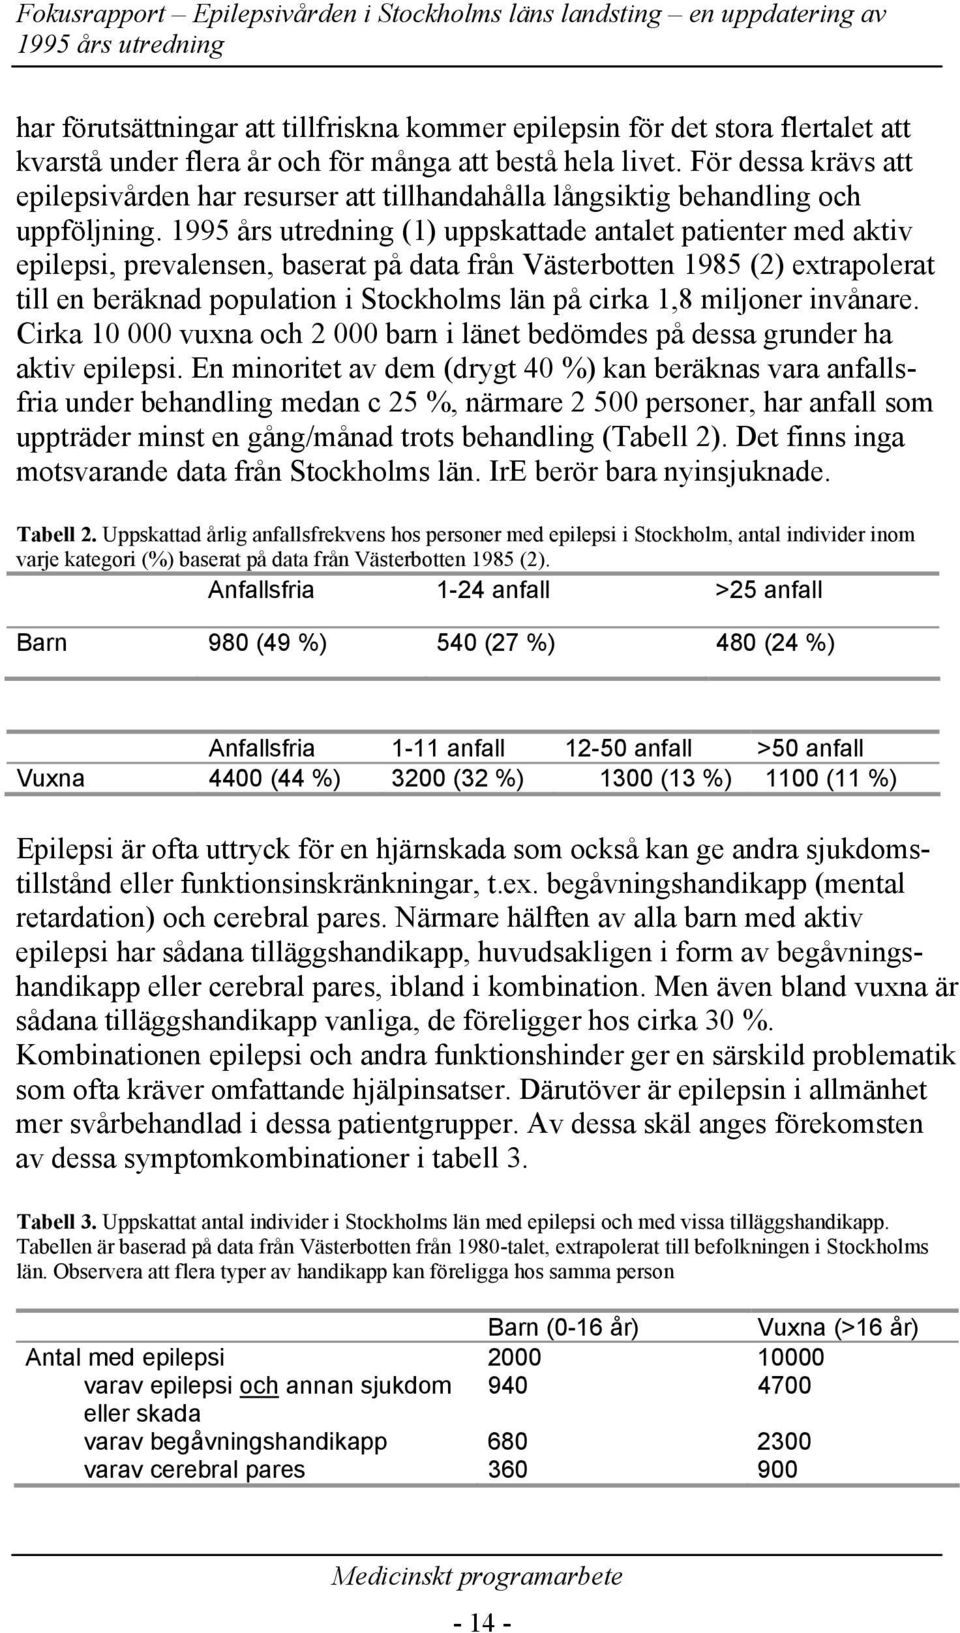 (1) uppskattade antalet patienter med aktiv epilepsi, prevalensen, baserat på data från Västerbotten 1985 (2) extrapolerat till en beräknad population i Stockholms län på cirka 1,8 miljoner invånare.